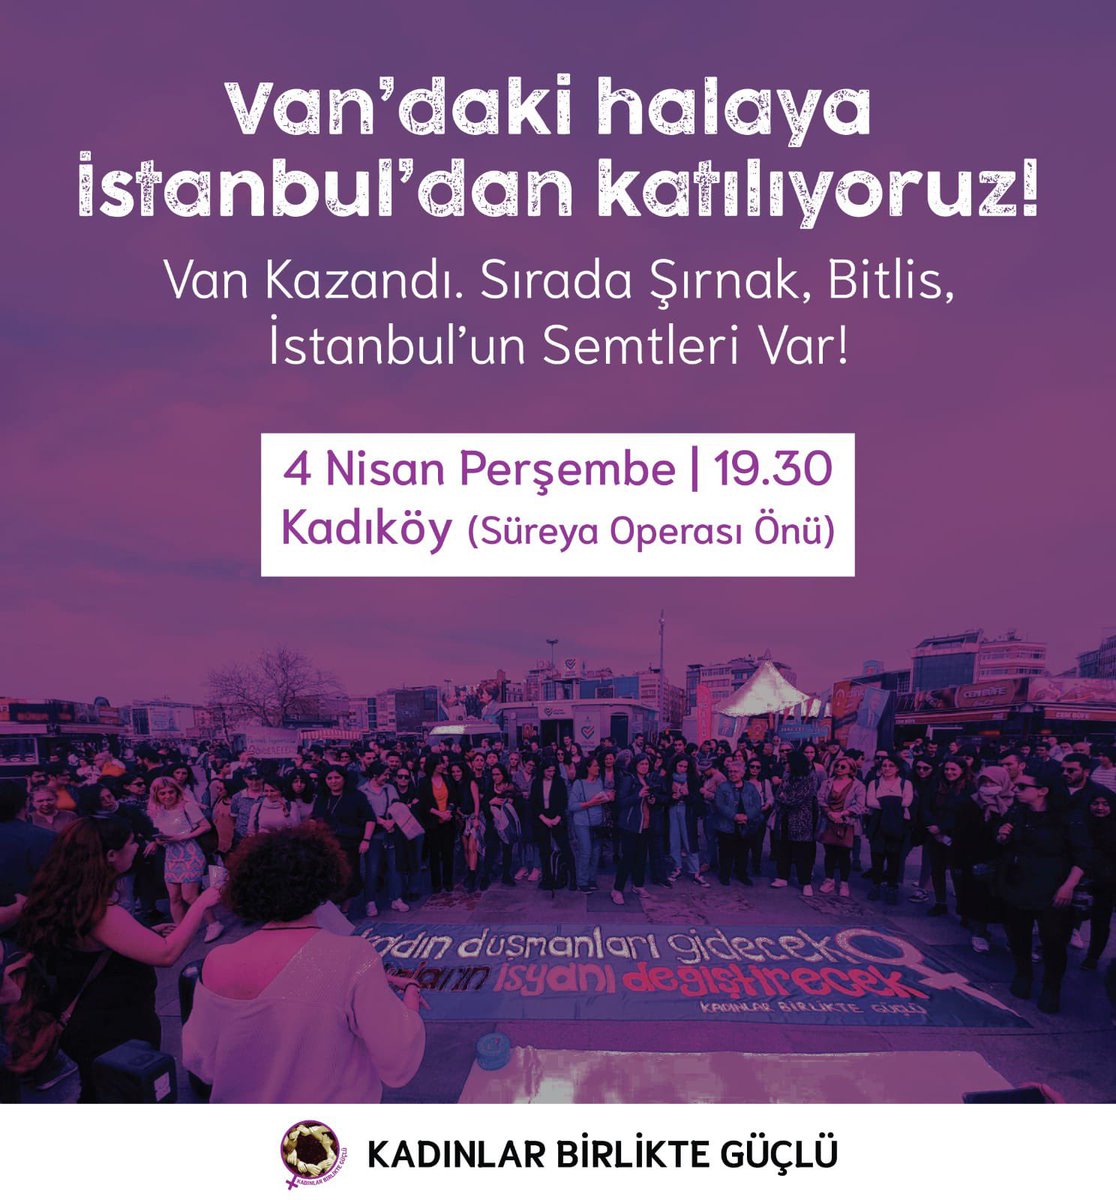 Van da direniş kazandı . Sırada Şırnak , Bitlis , İstanbul ‘ un semtleri var. Bu irade gaspına karşı biz kadınlar ses çıkarmaya devam ediyoruz . 4 Nisan Perşembe günü saat 19.30 da Kadıköy Süreyya Operası önünde buluşuyoruz.